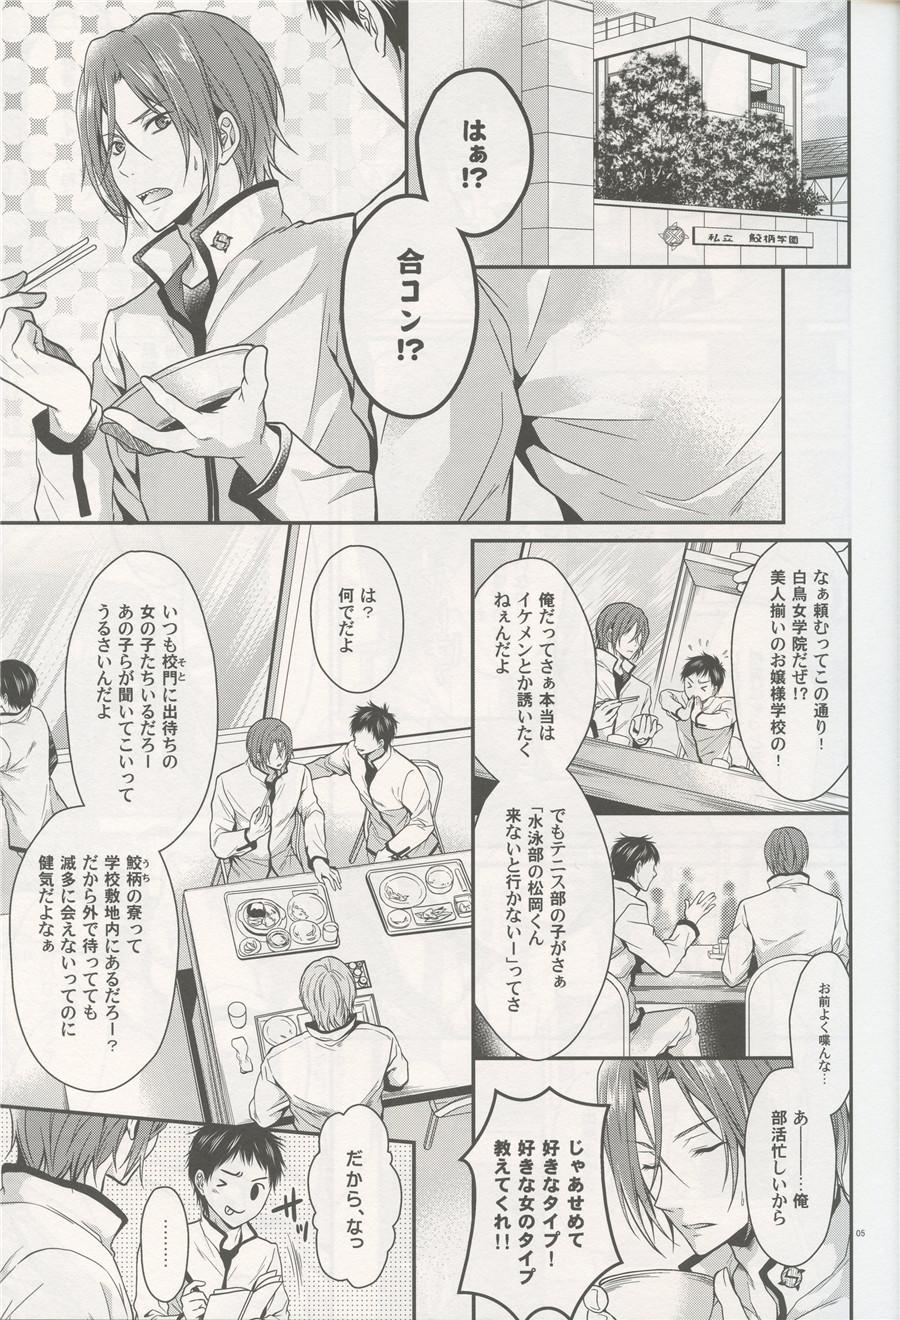 For Aitsu no Yome Skill ga Takasugirundaga. - Free Oil - Page 4